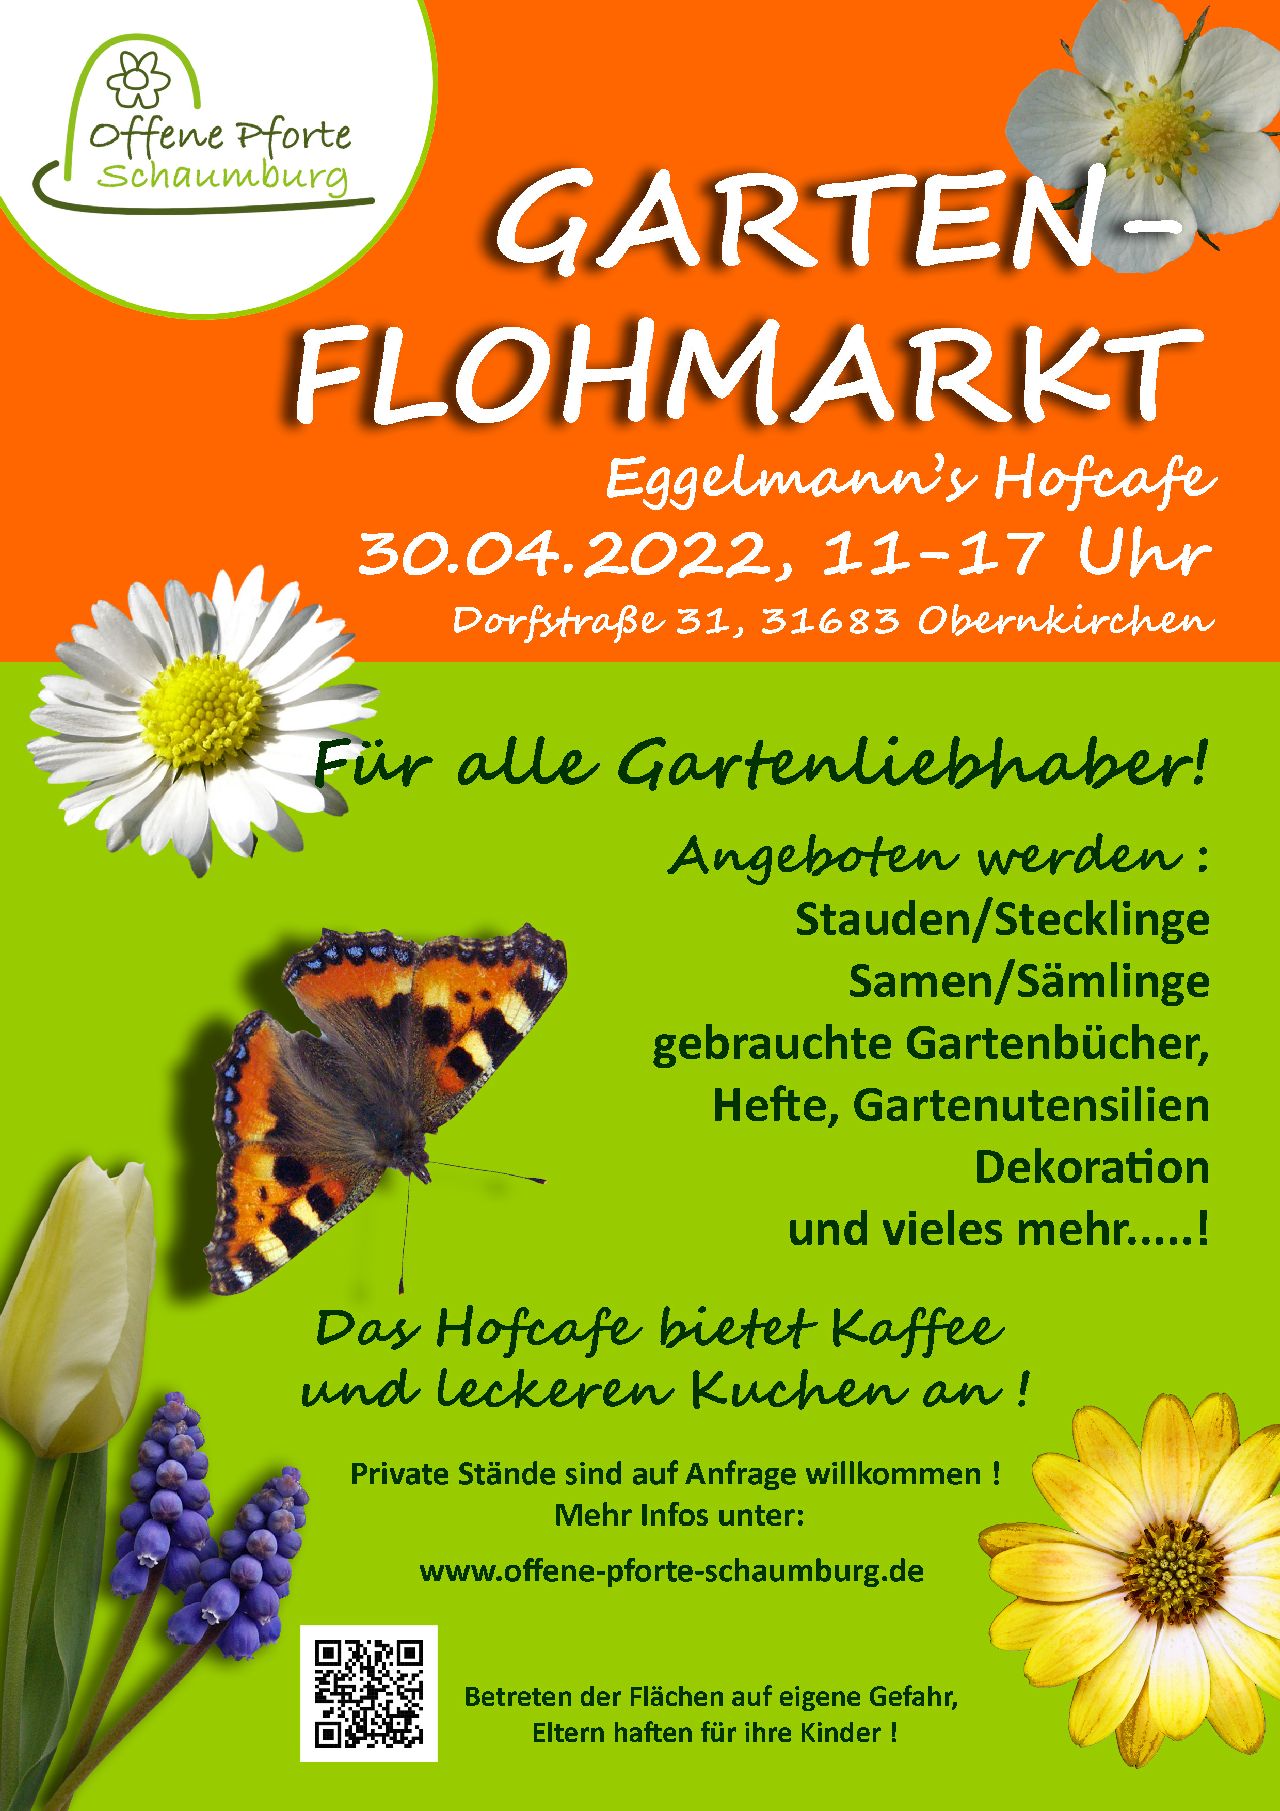 Plakat Gartenflohmarkt neuklein